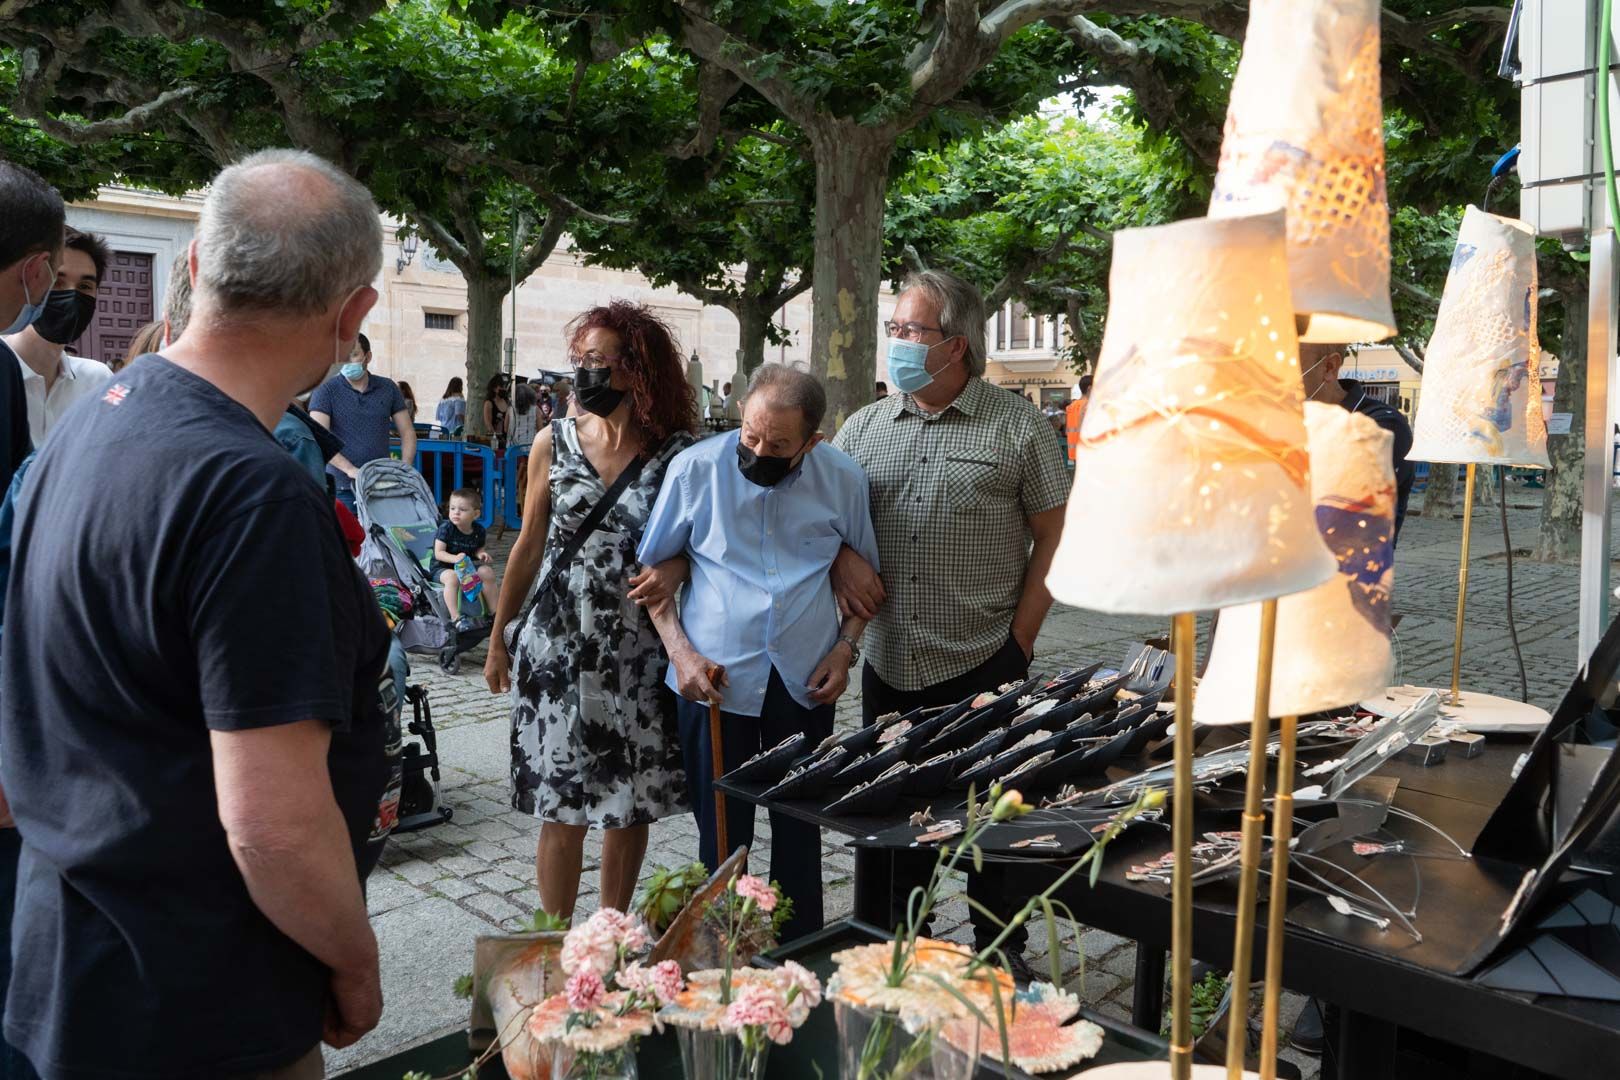 GALERÍA | La Feria de la Cerámica y Alfarería Popular de Zamora 2021, en imágenes